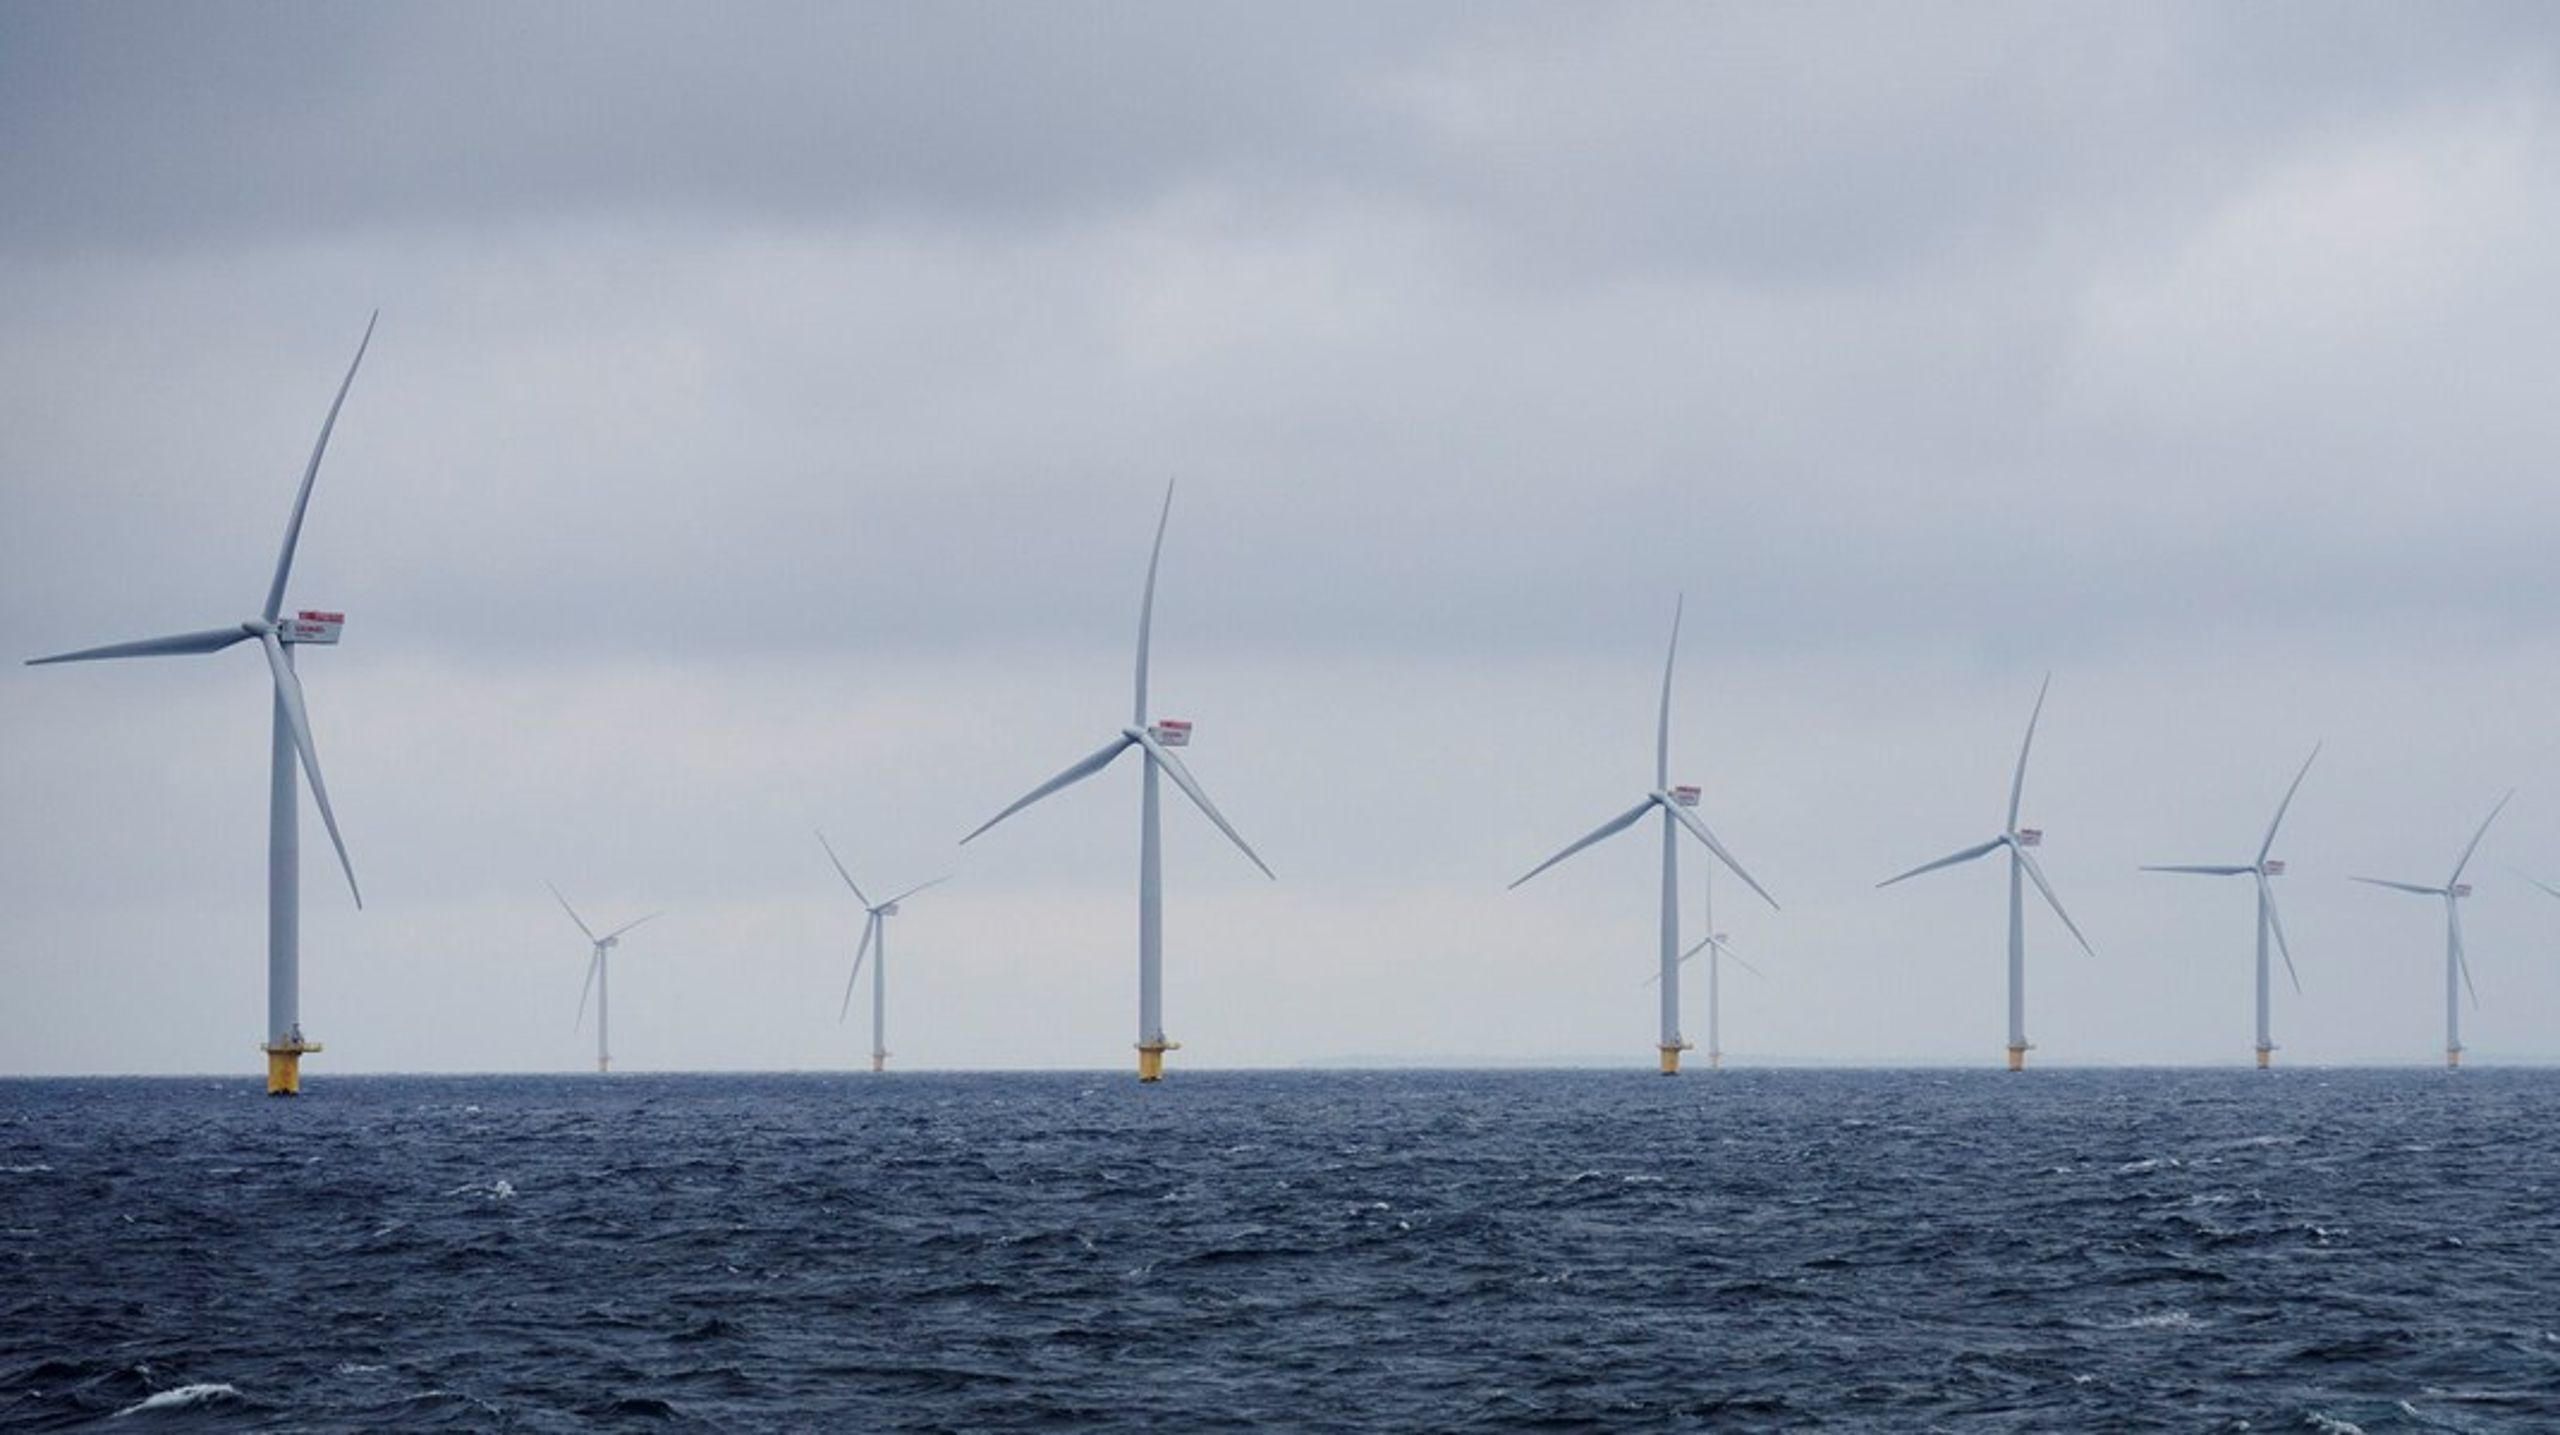 Skotland er allerede i gang med at producere brint fra vindenergi. De vil møde&nbsp;<span>cirka 10 procent af Europas estimerede efterspørgsel på brint i midten af 2030’erne, hvorfor der fortsat er plads til konkurrenter på markedet, skriver Karsten Schibsbye.<br></span>